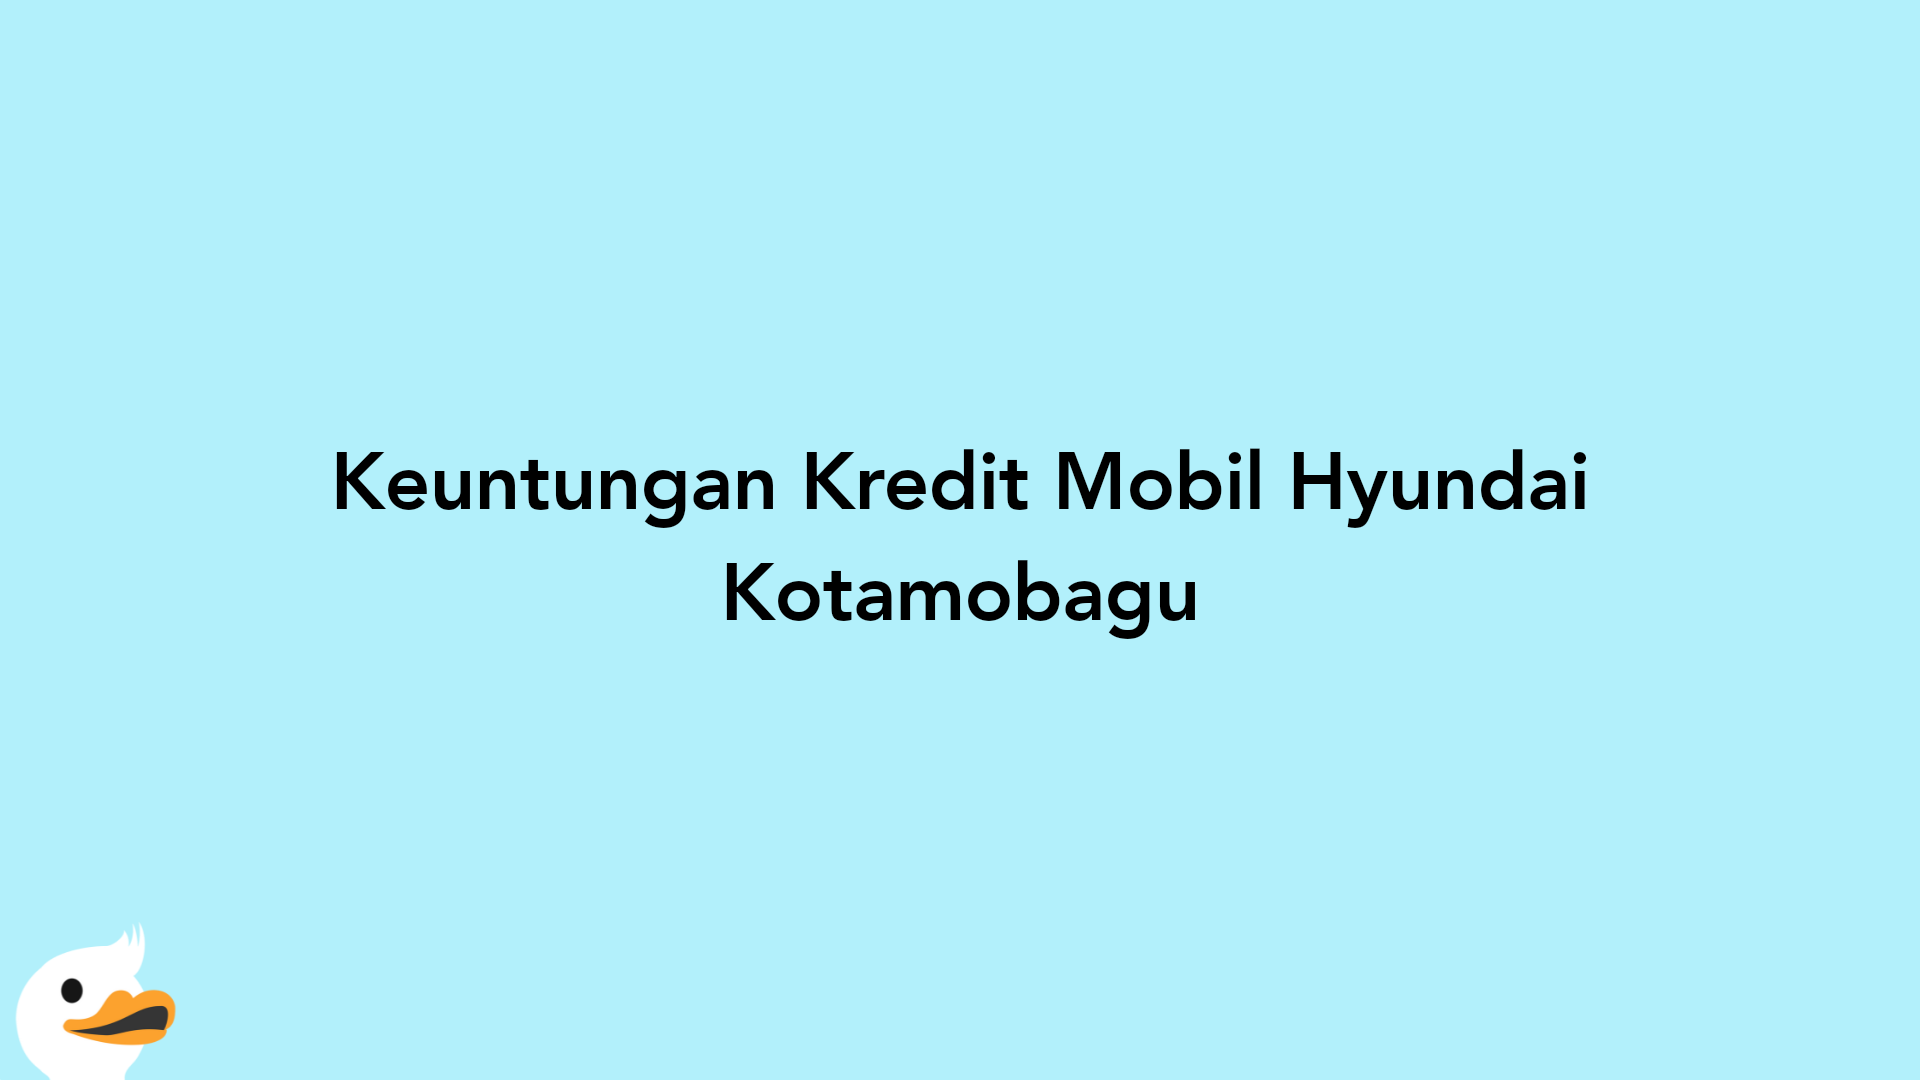 Keuntungan Kredit Mobil Hyundai Kotamobagu